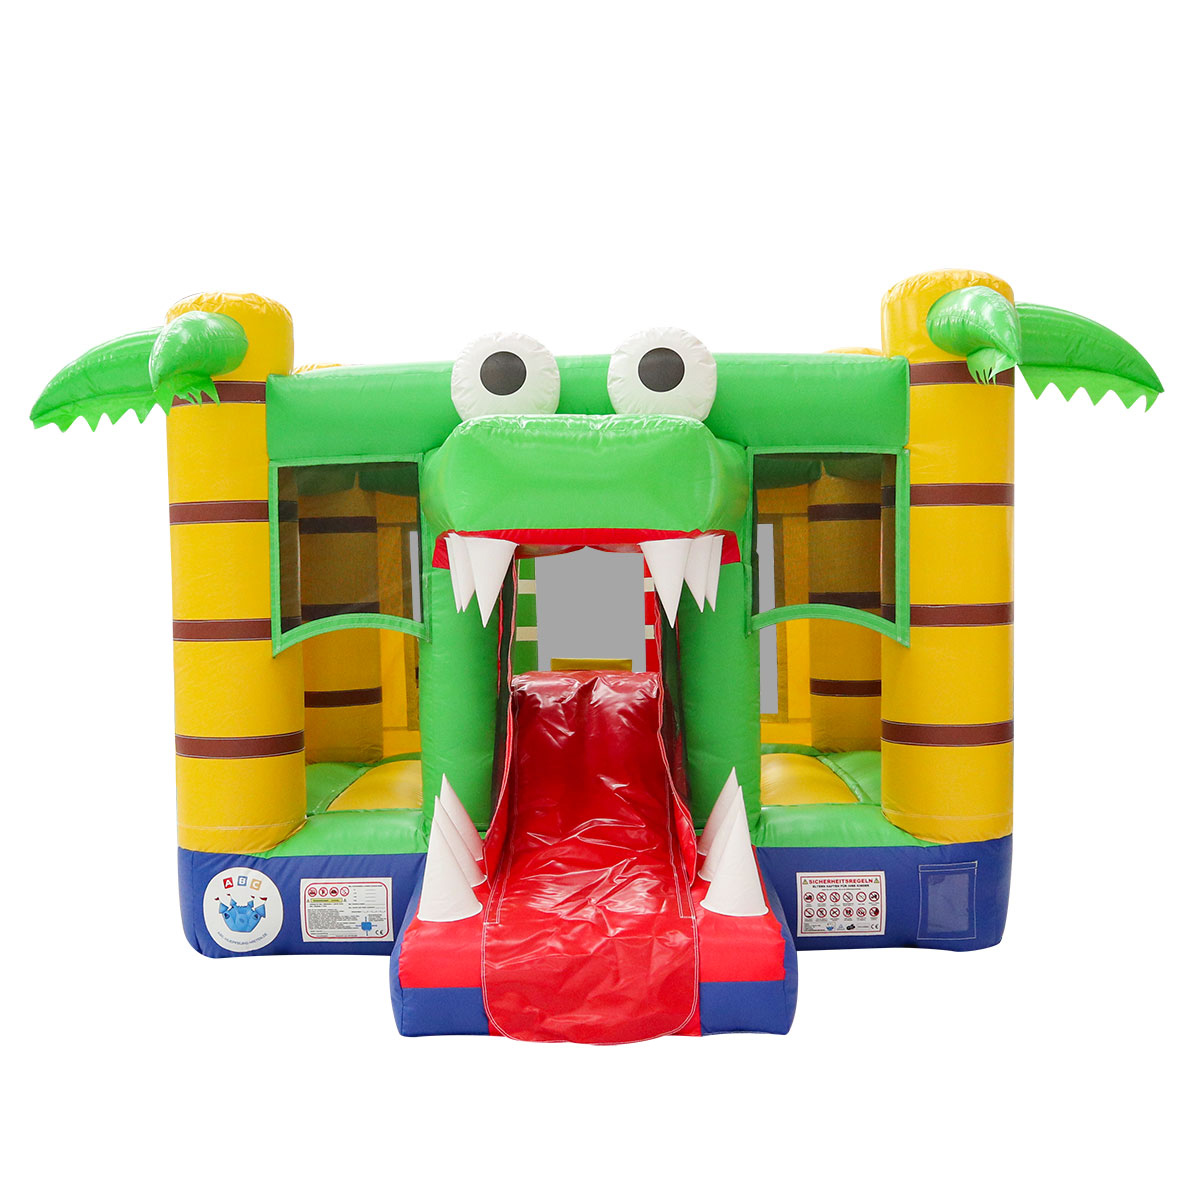 Inflatable crocodile bounce houseYG-136